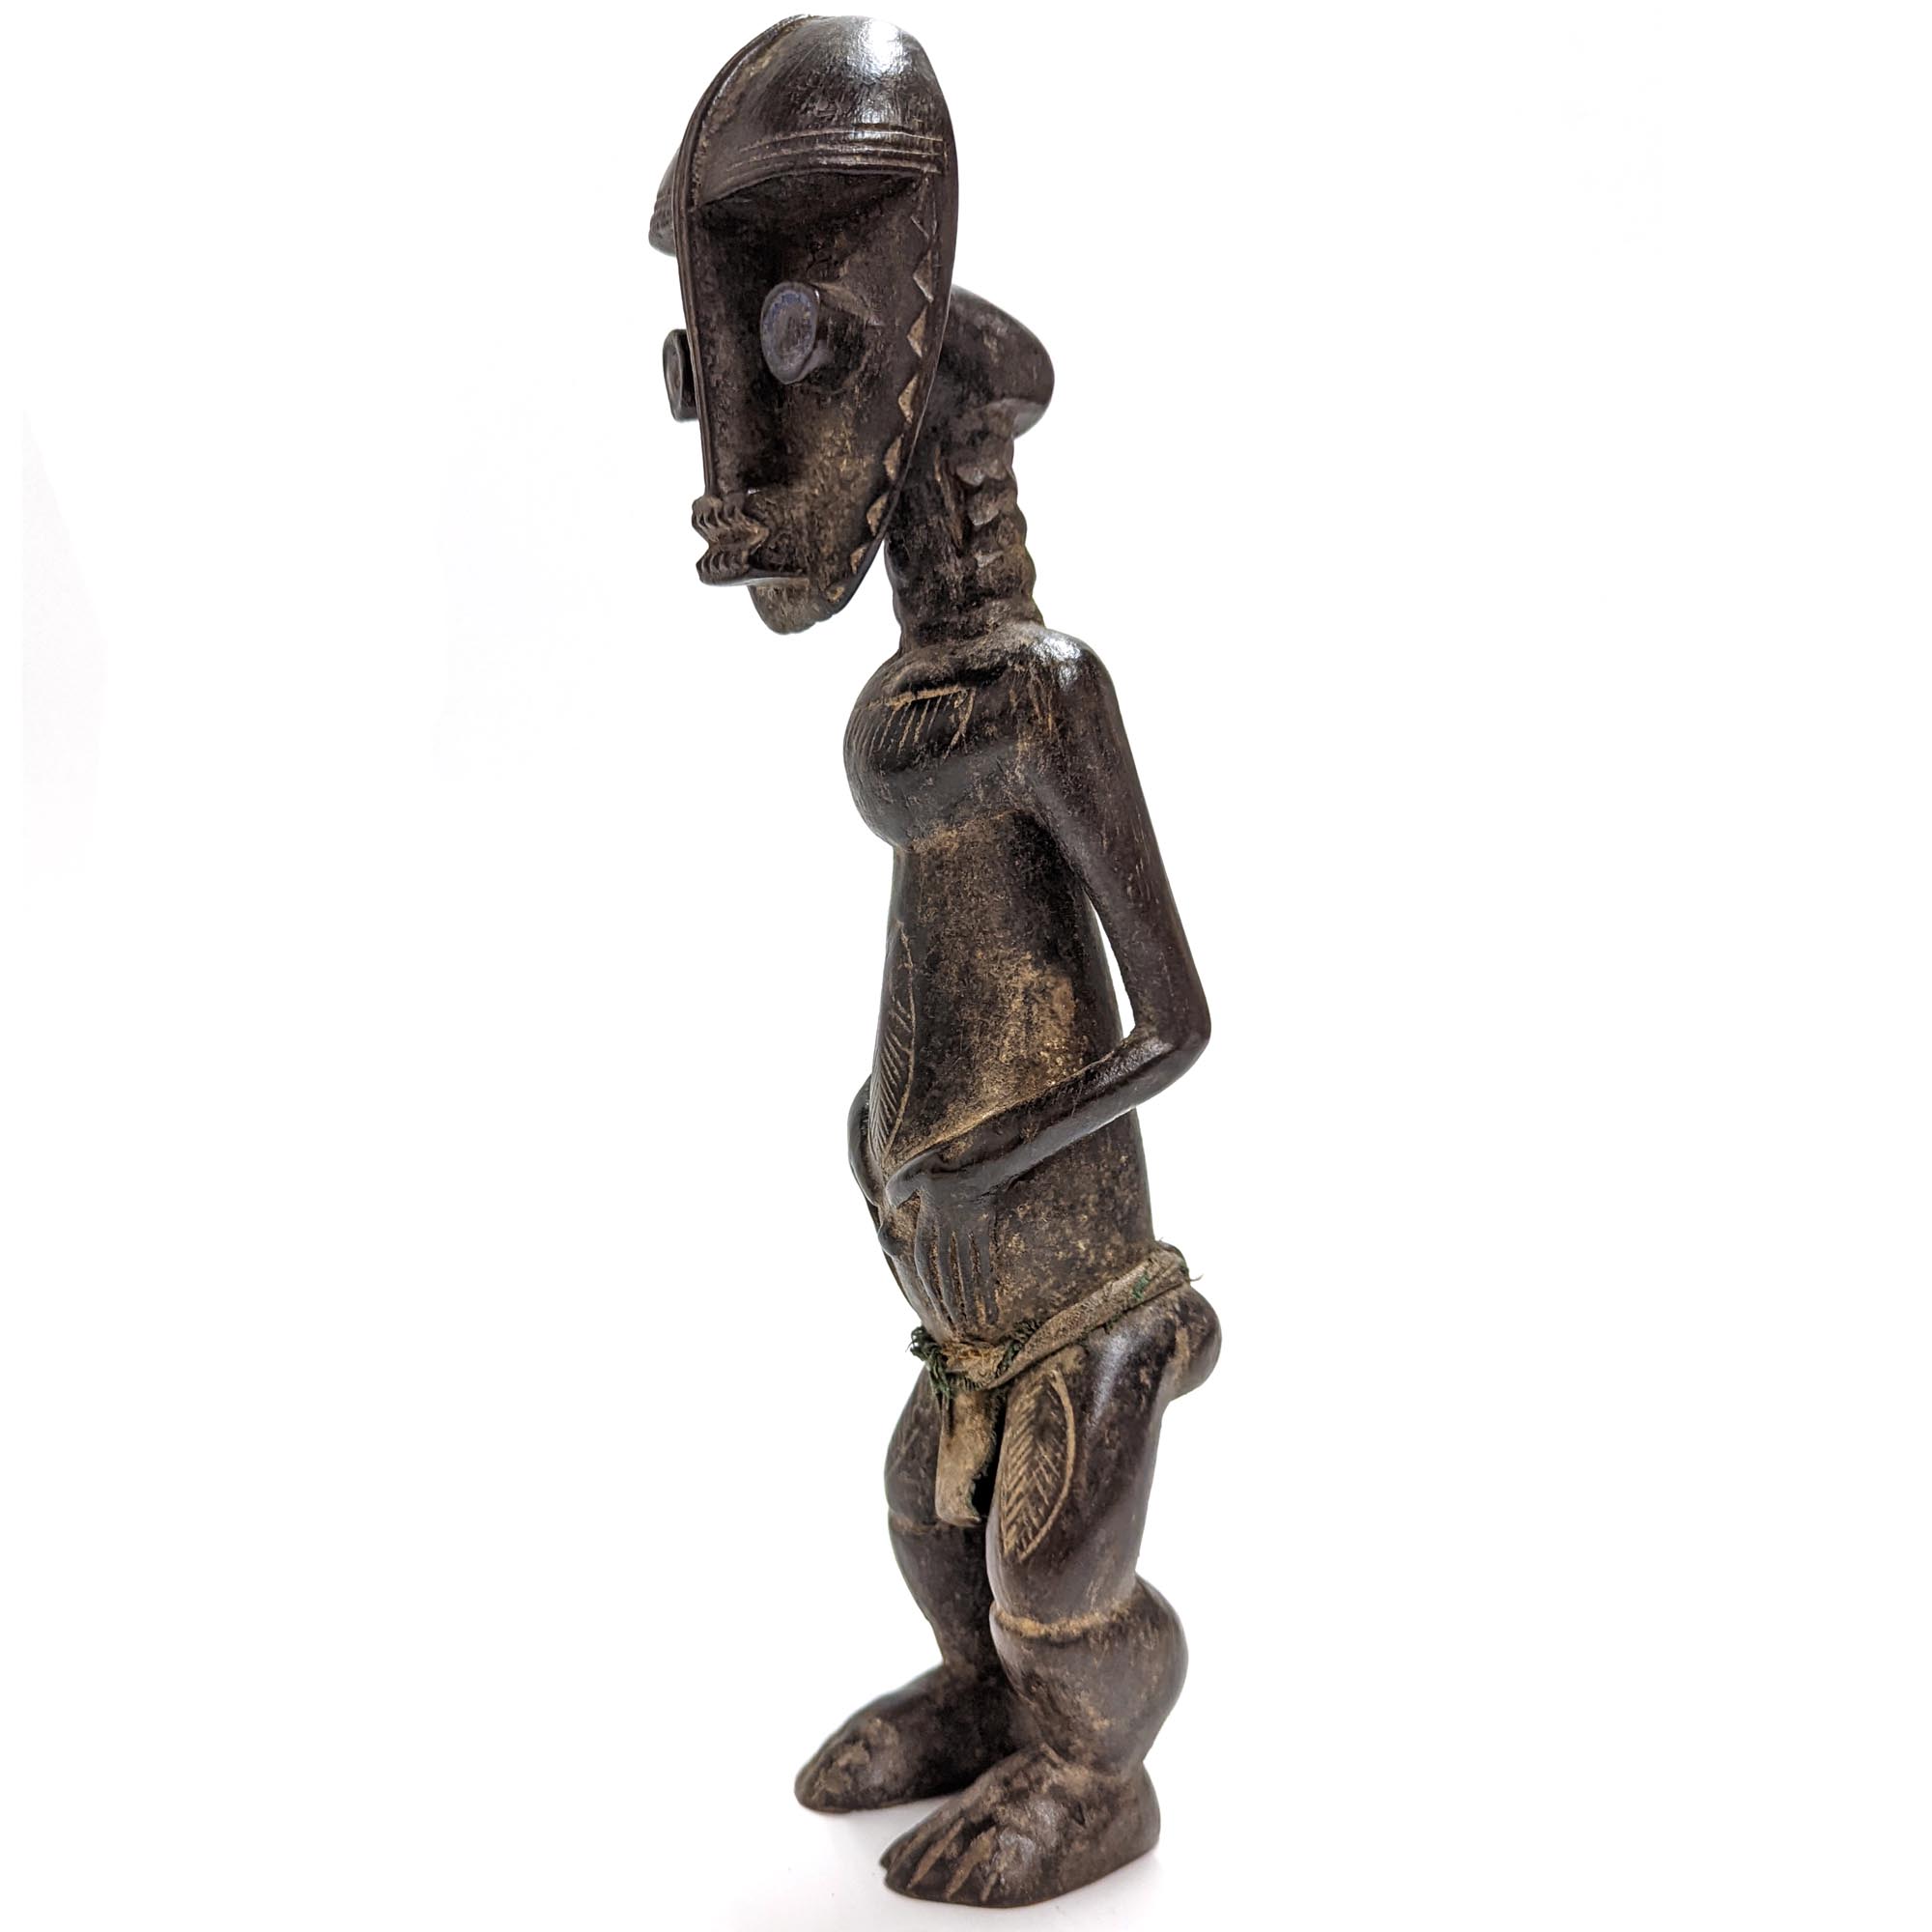 アフリカ 呪物 セヌフォ族 オラクルフィギュア プリミティブアート 